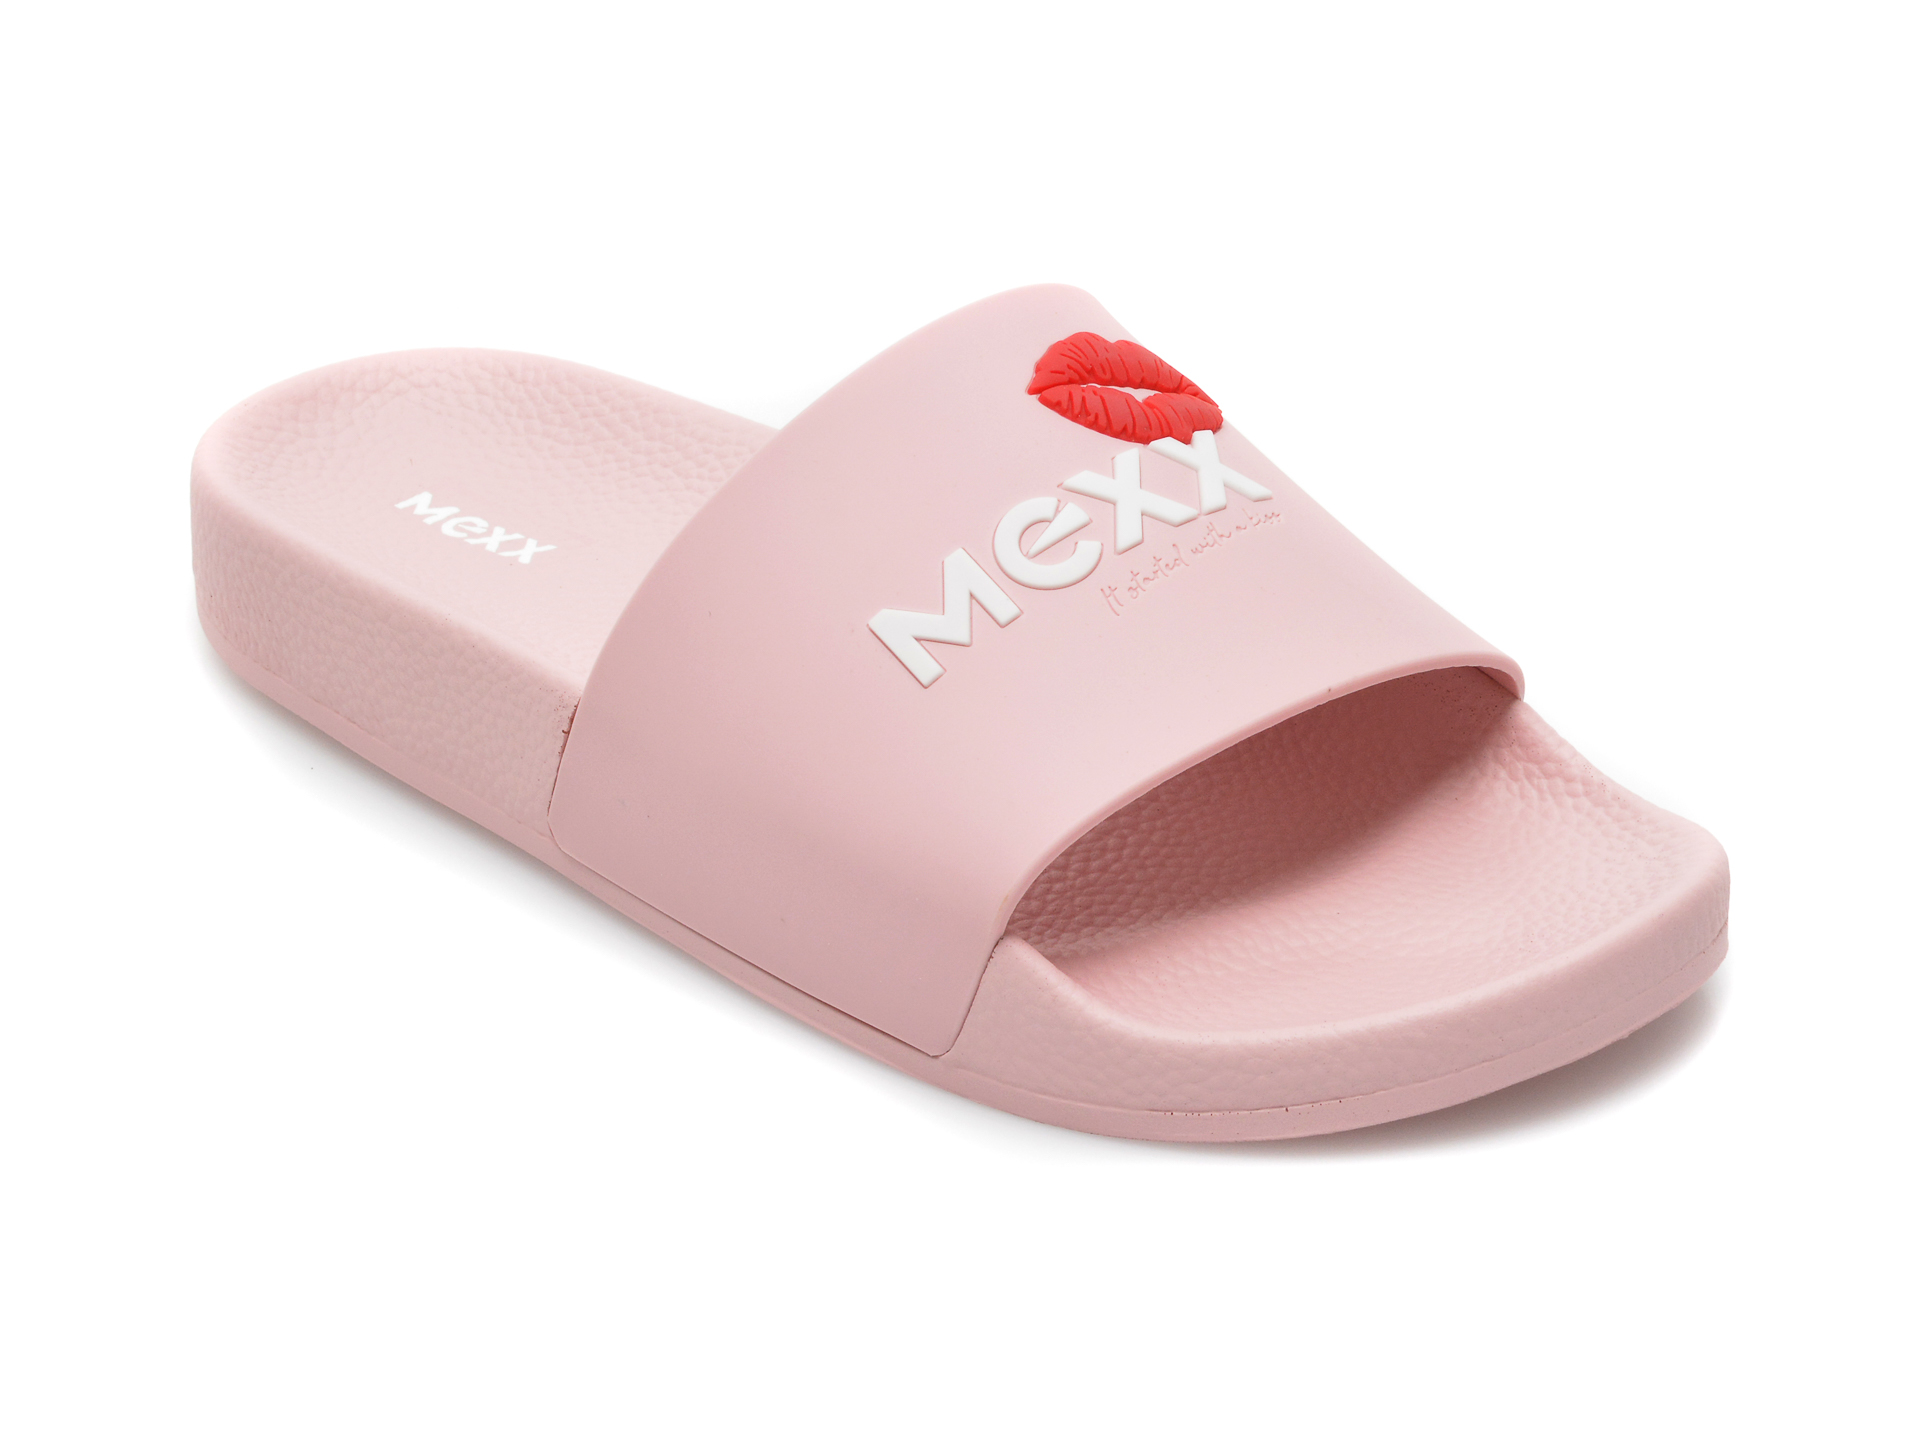 Papuci MEXX roz, SN0014, din piele ecologica Mexx Mexx